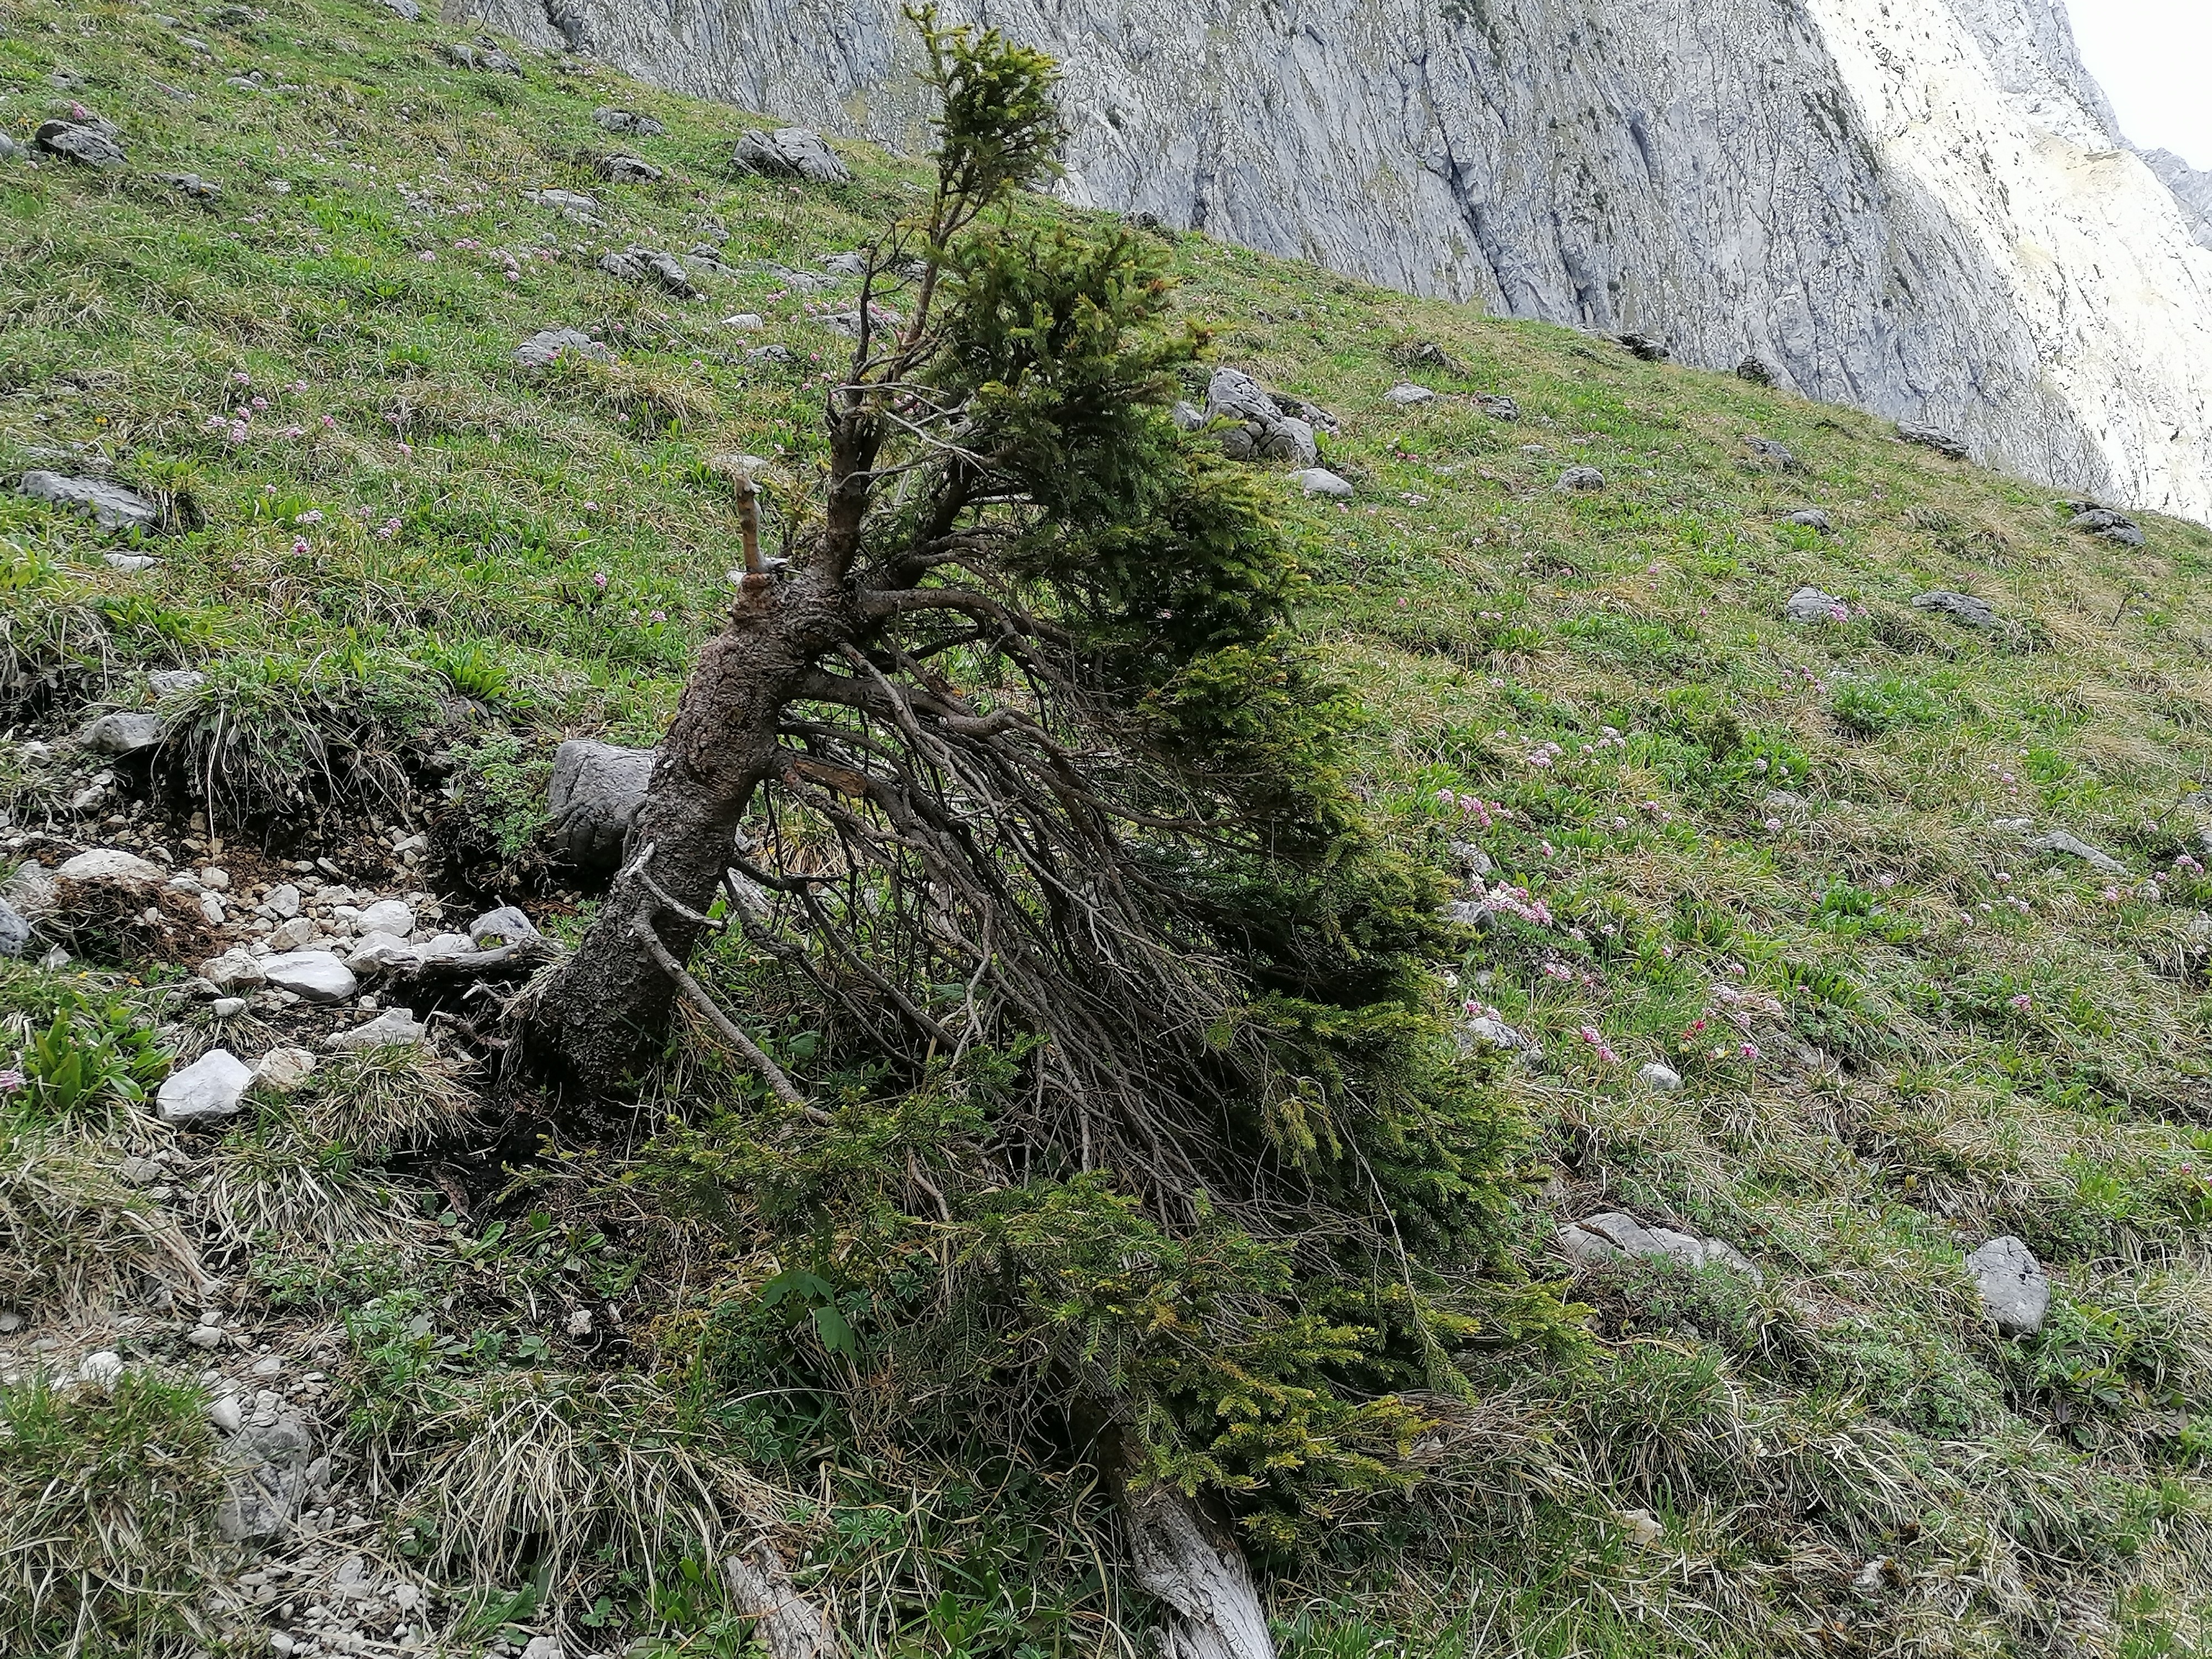 strauchförmige Fichte als Vorposten im alpinen Rasen